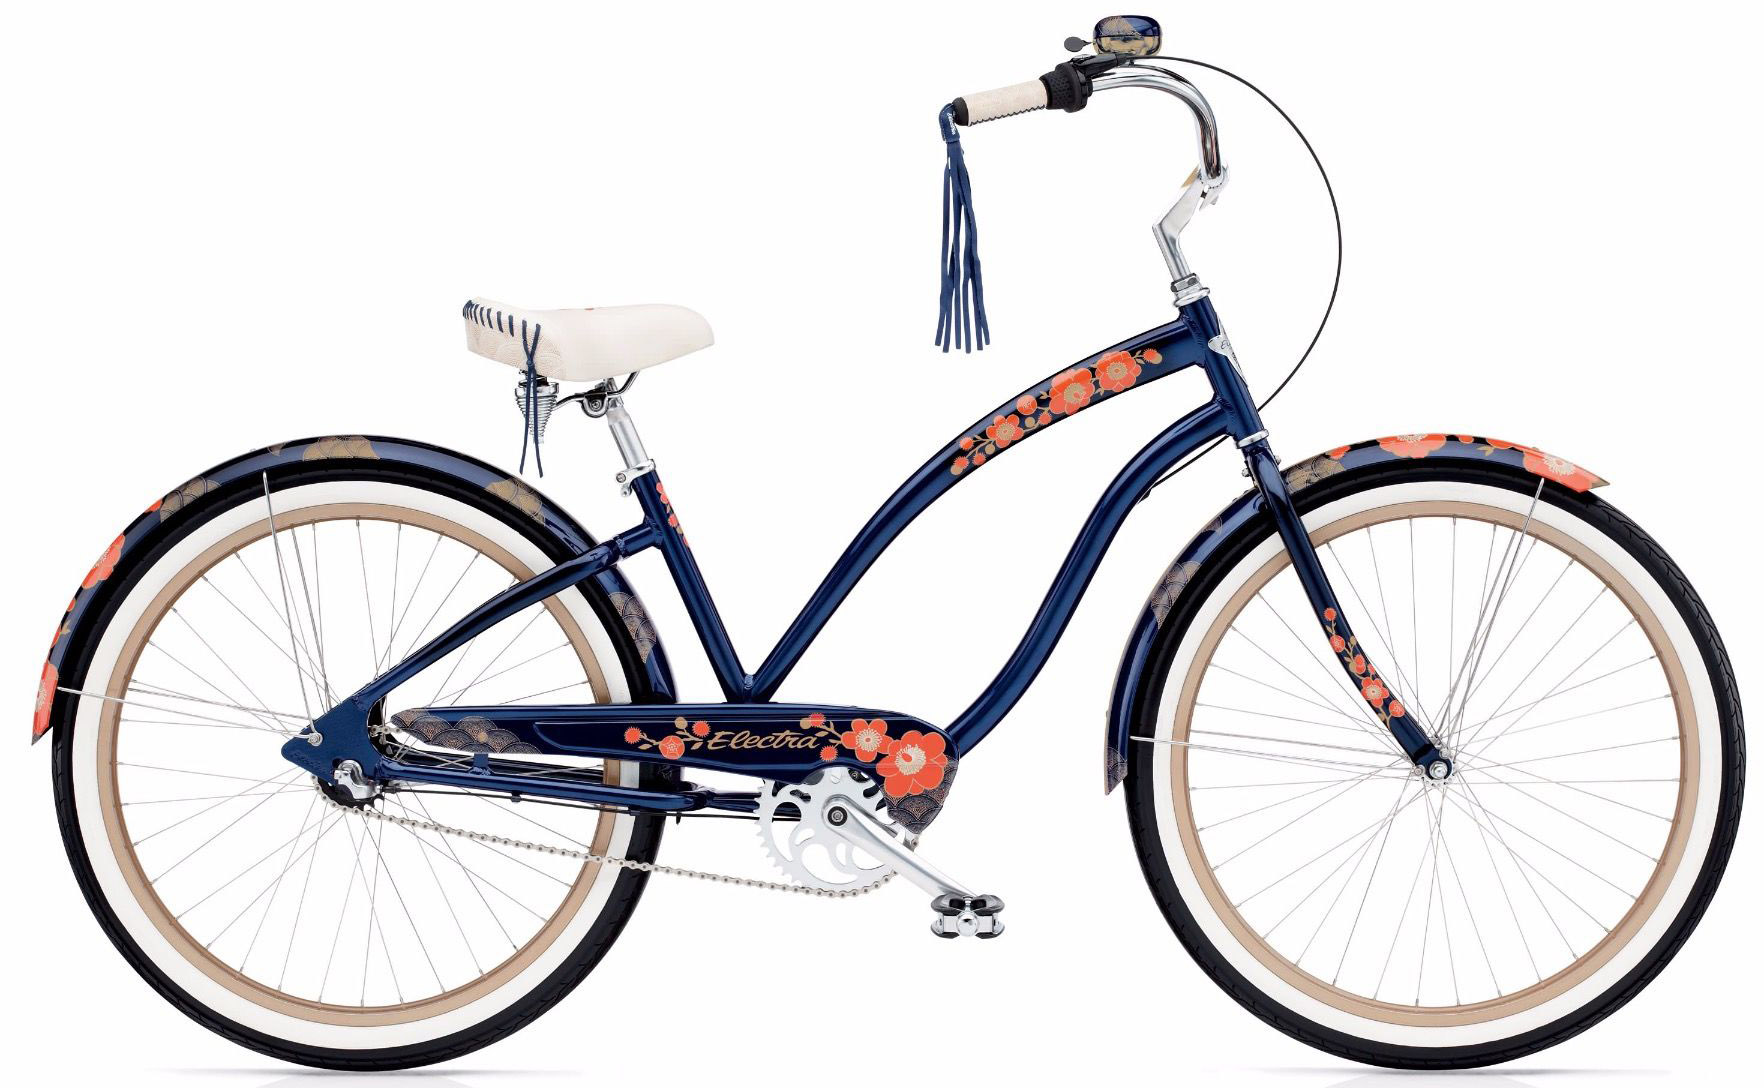  Отзывы о Женском велосипеде Electra Hanami 3i 2020